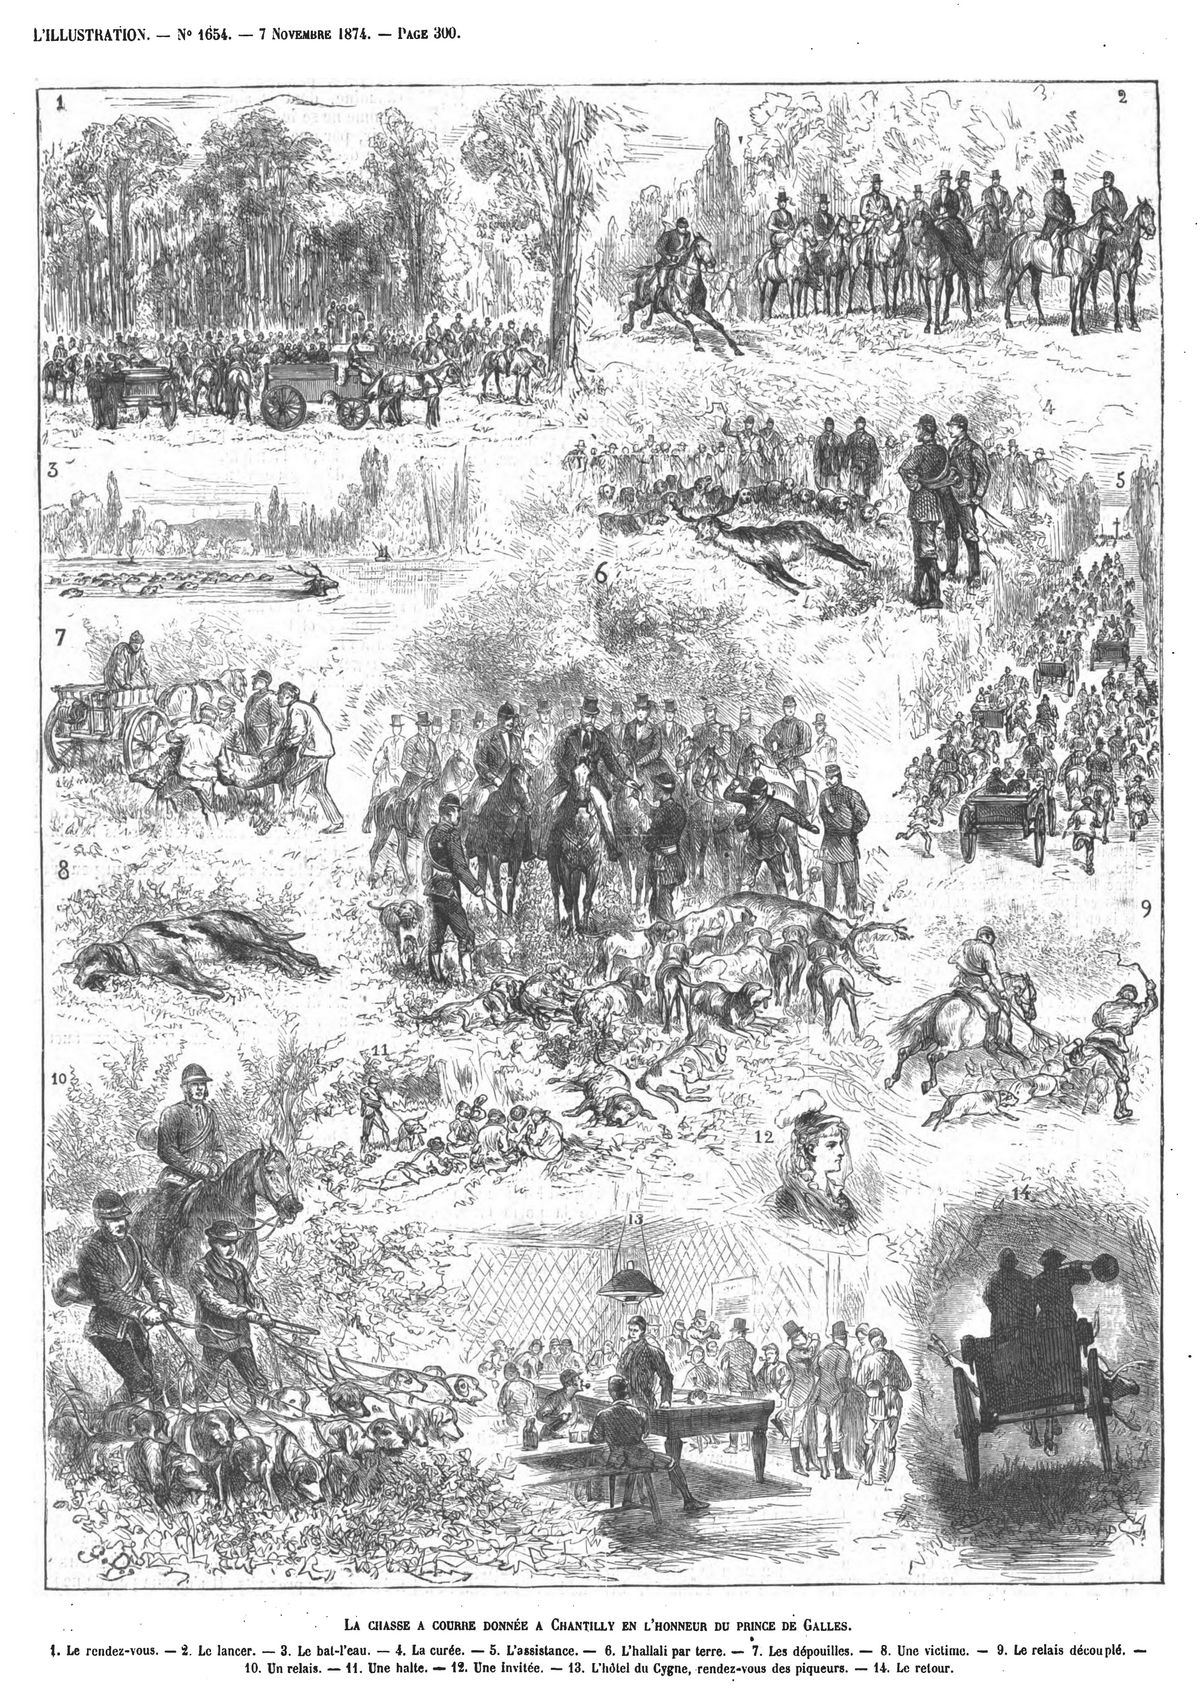 La chasse à courre donnée à Chantilly en l’honneur du prince de Galles. Gravure 1874